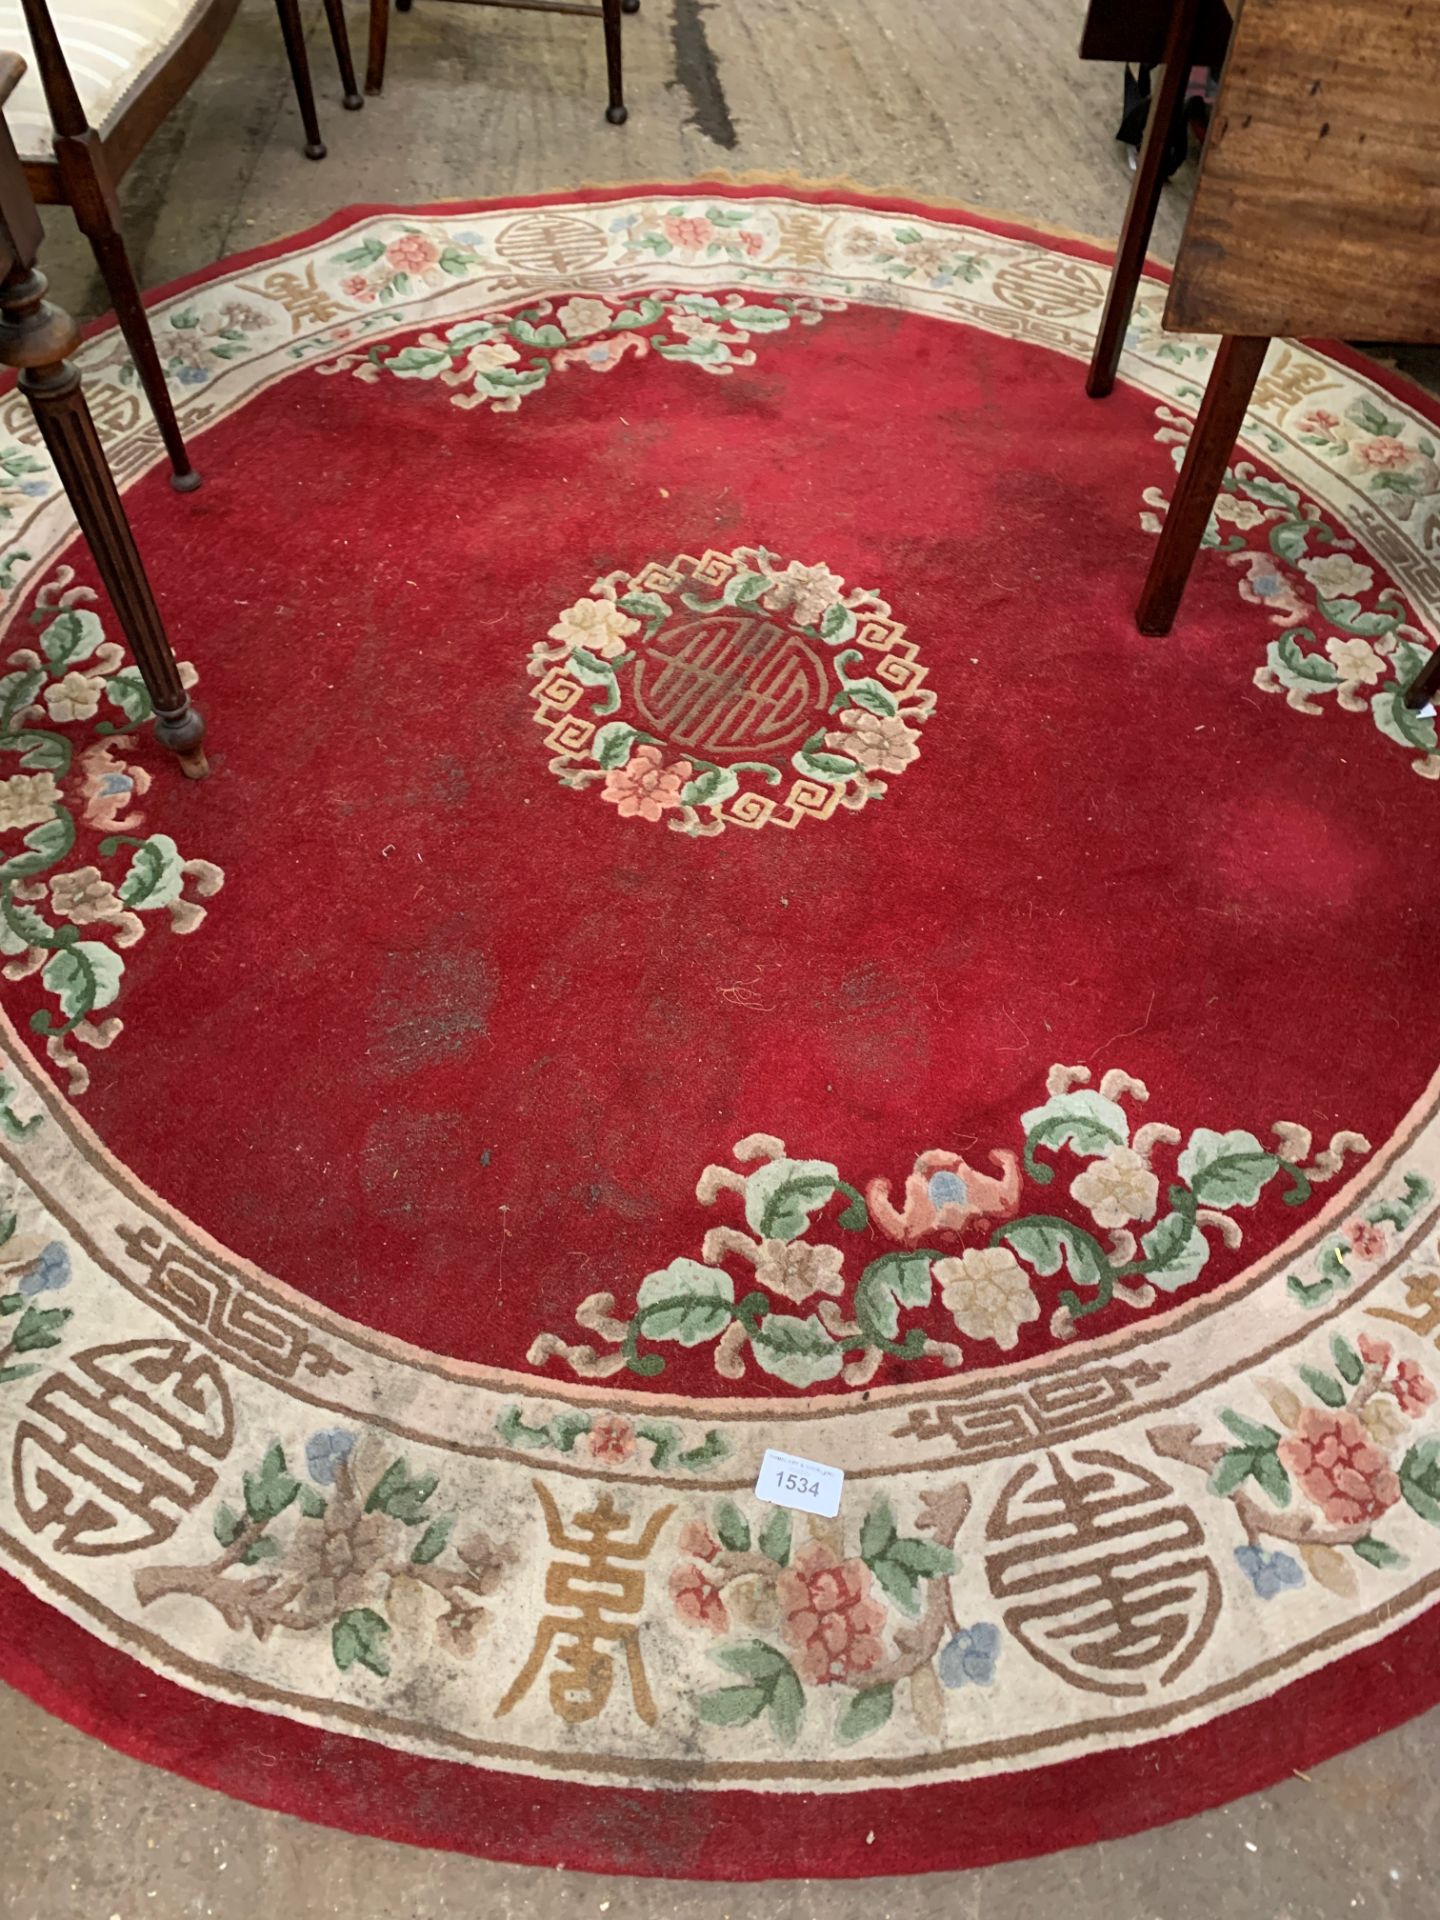 Circular red ground Chinese pattern rug.